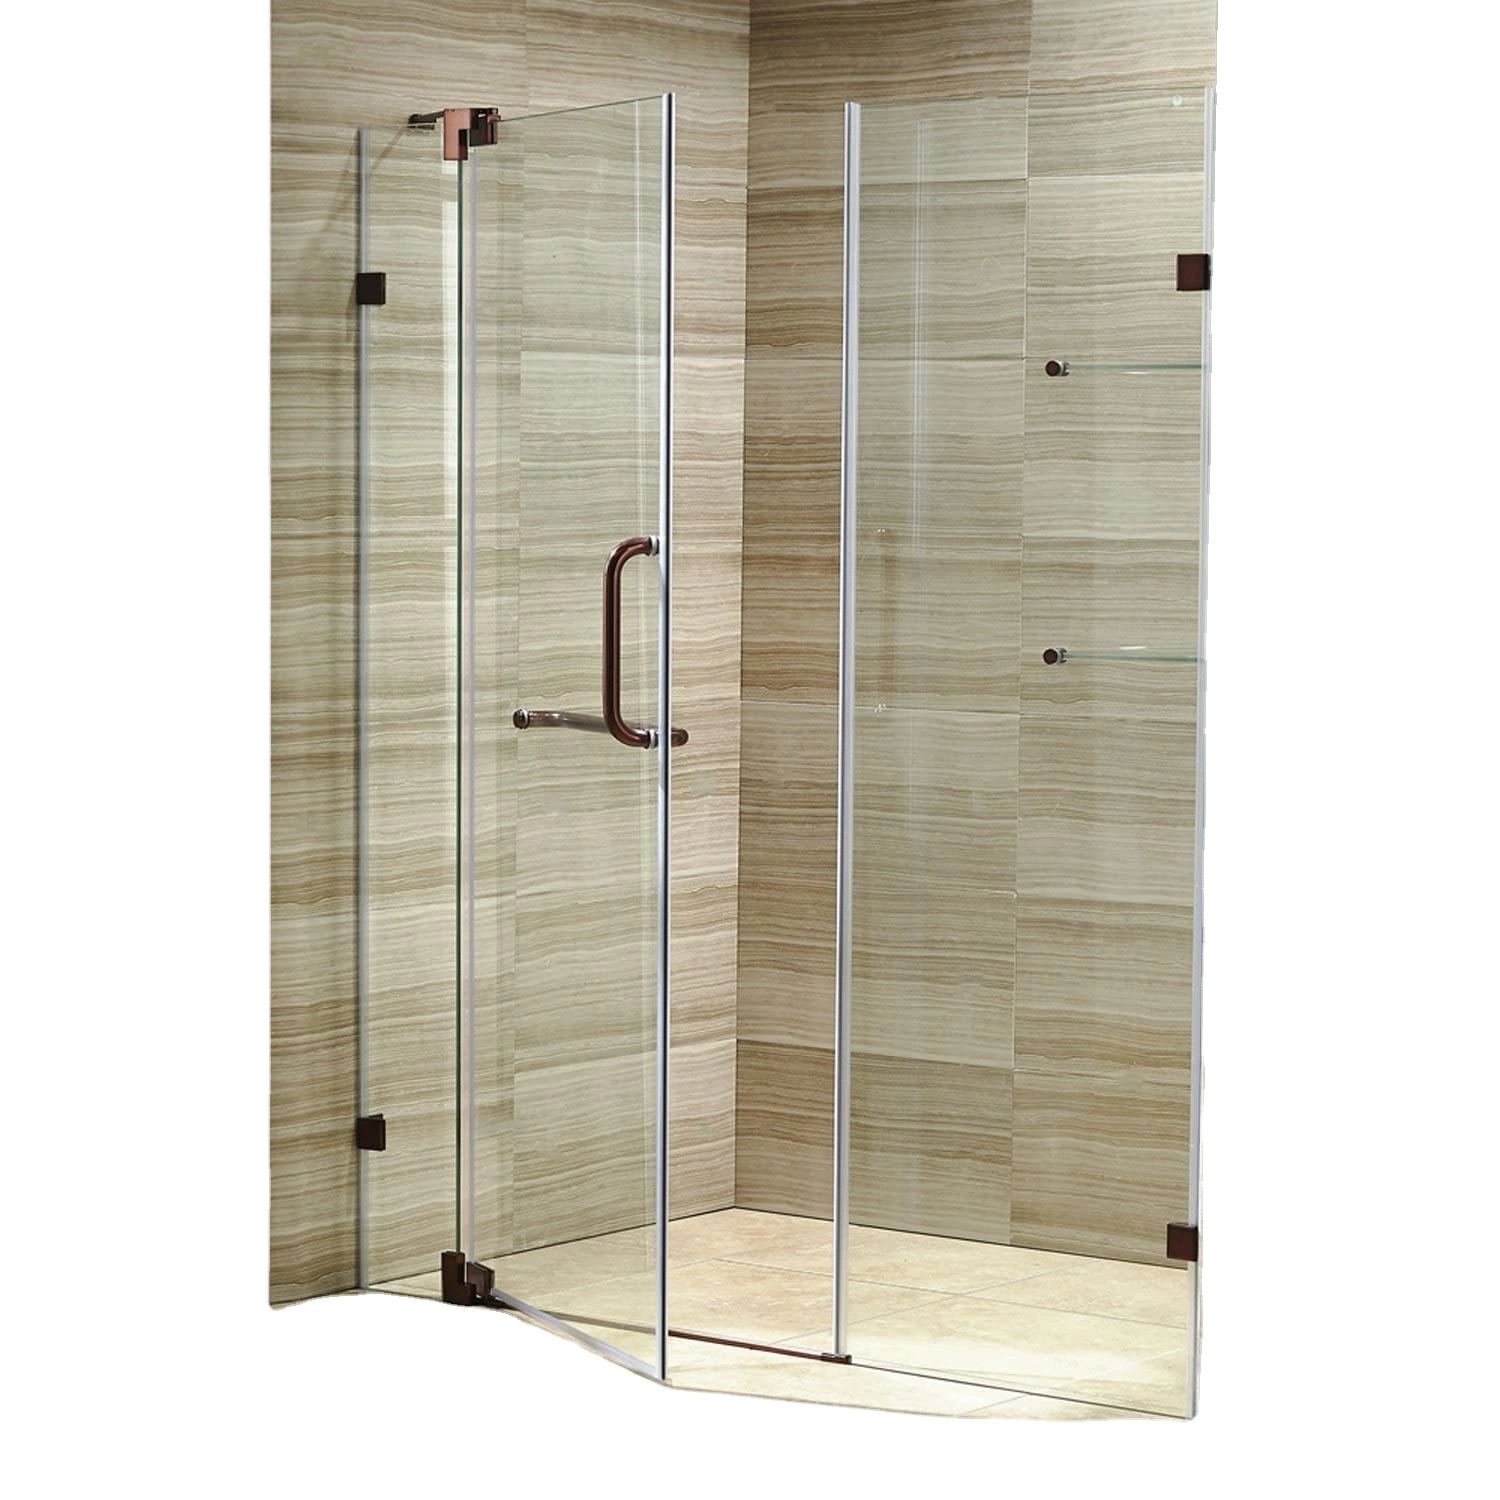 El cuarto de baño adaptado puerta plegable precio de fábrica de vidrio templado Alojamiento Baño Con Ducha con baja